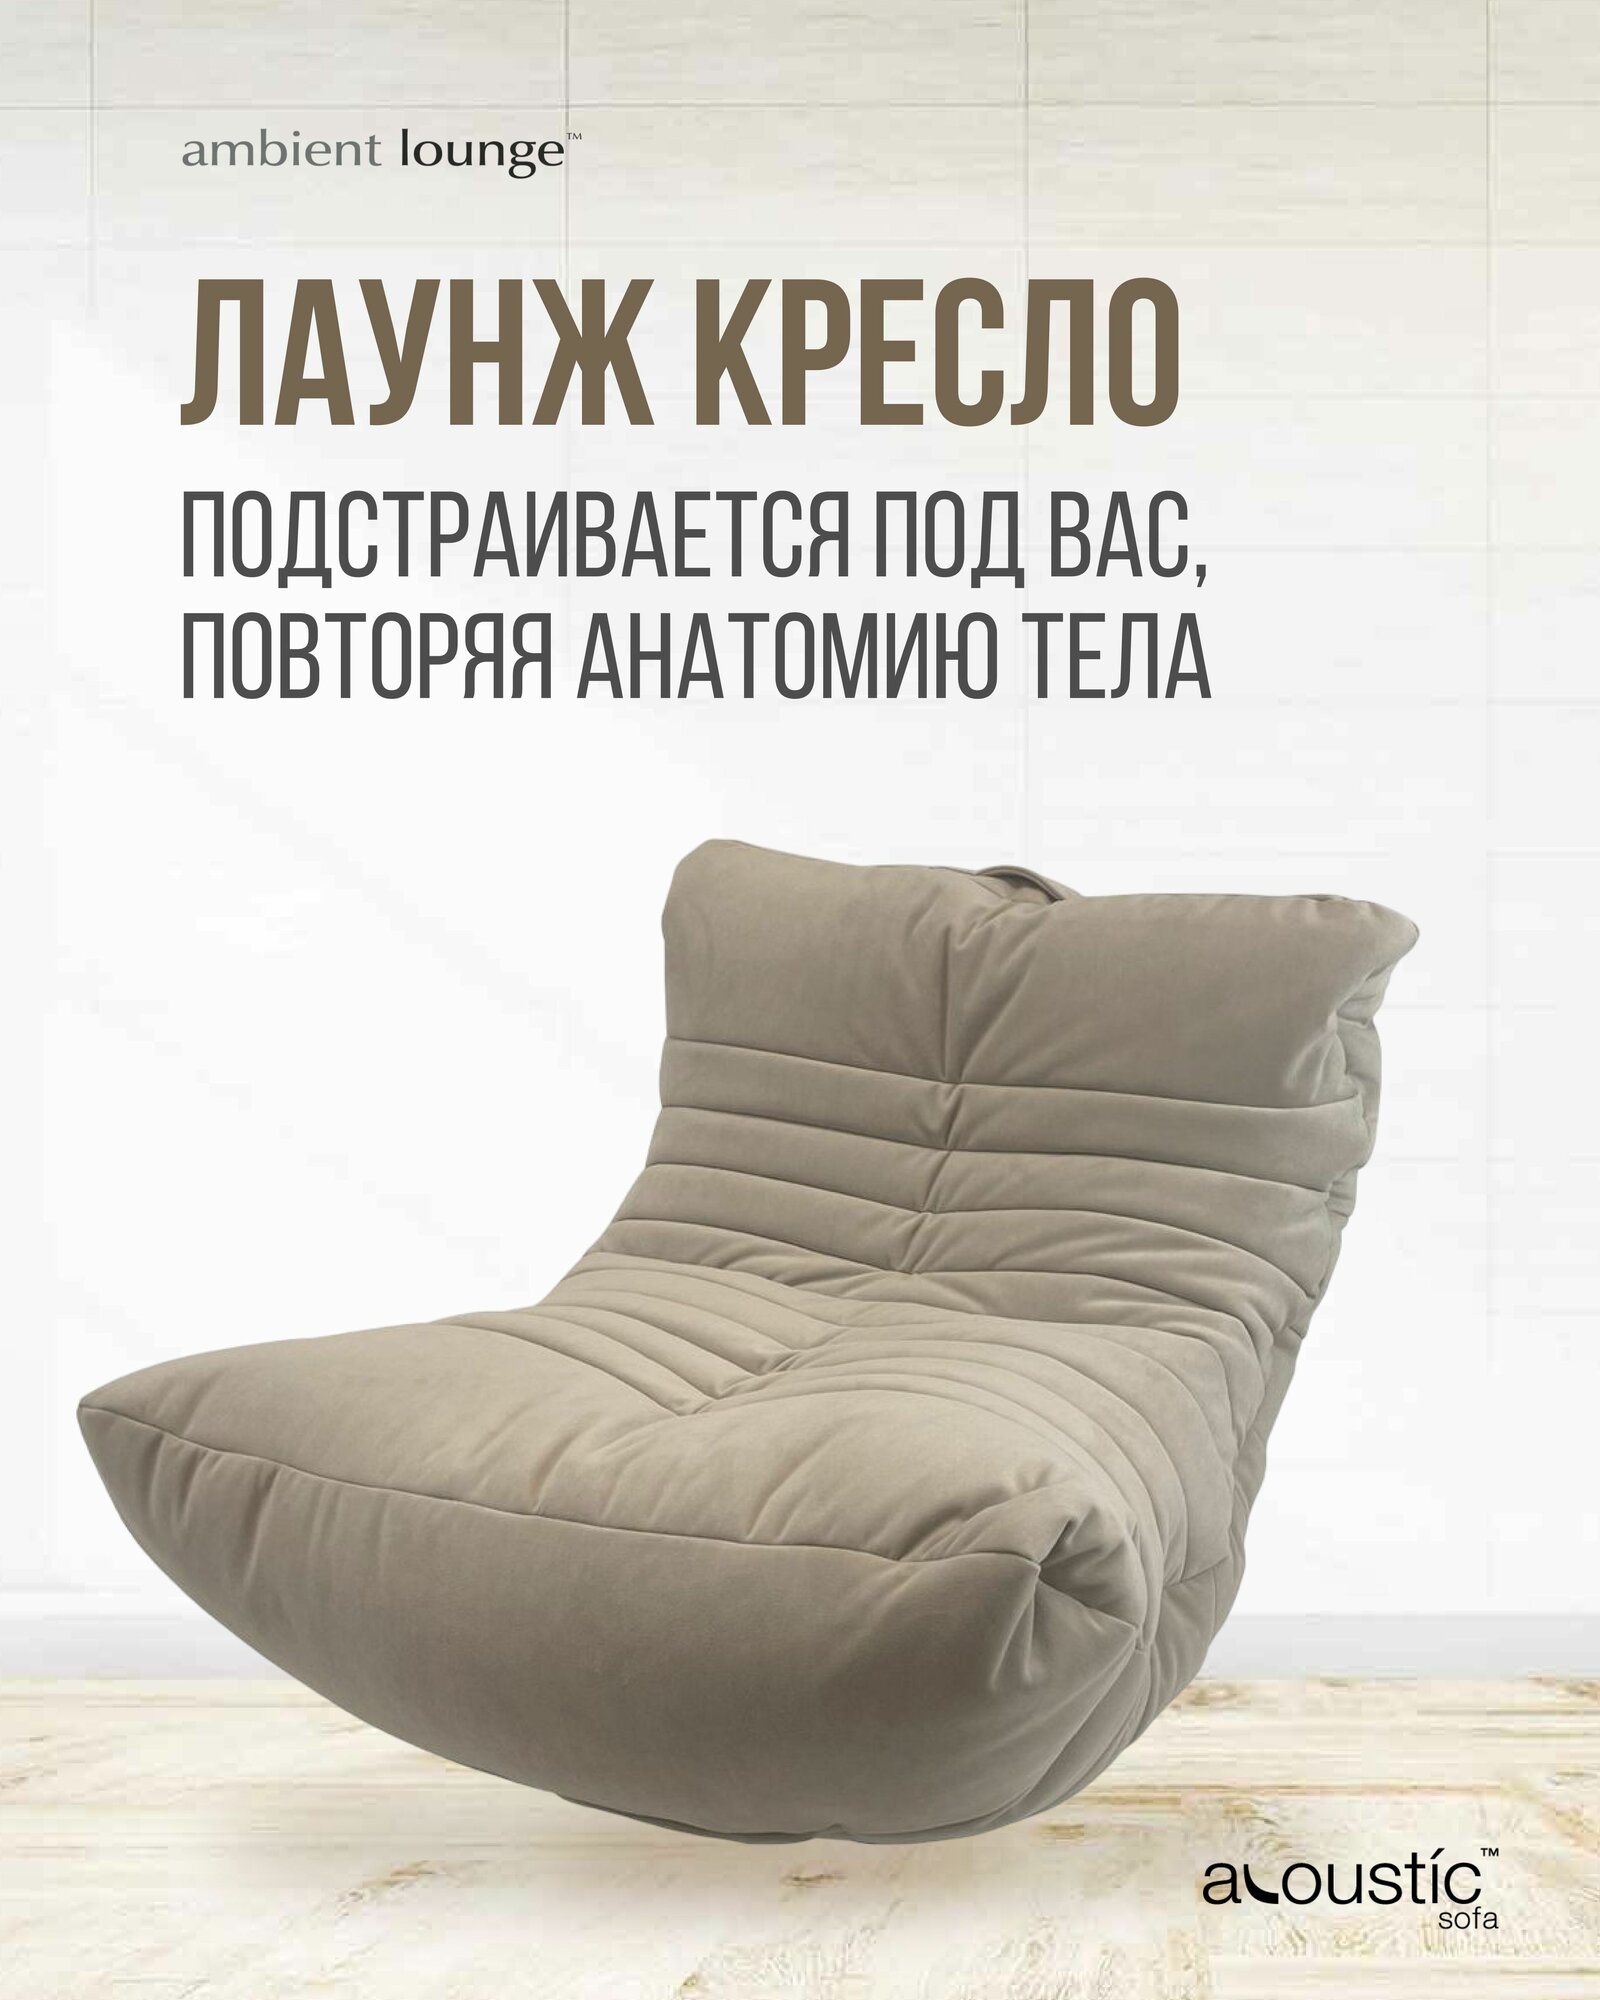 Бескаркасное дизайнерское кресло для отдыха aLounge - Acoustic Sofa - Eco Weave (велюр, бежевый) - лаунж мебель в гостиную, спальню, детскую, офис, на балкон